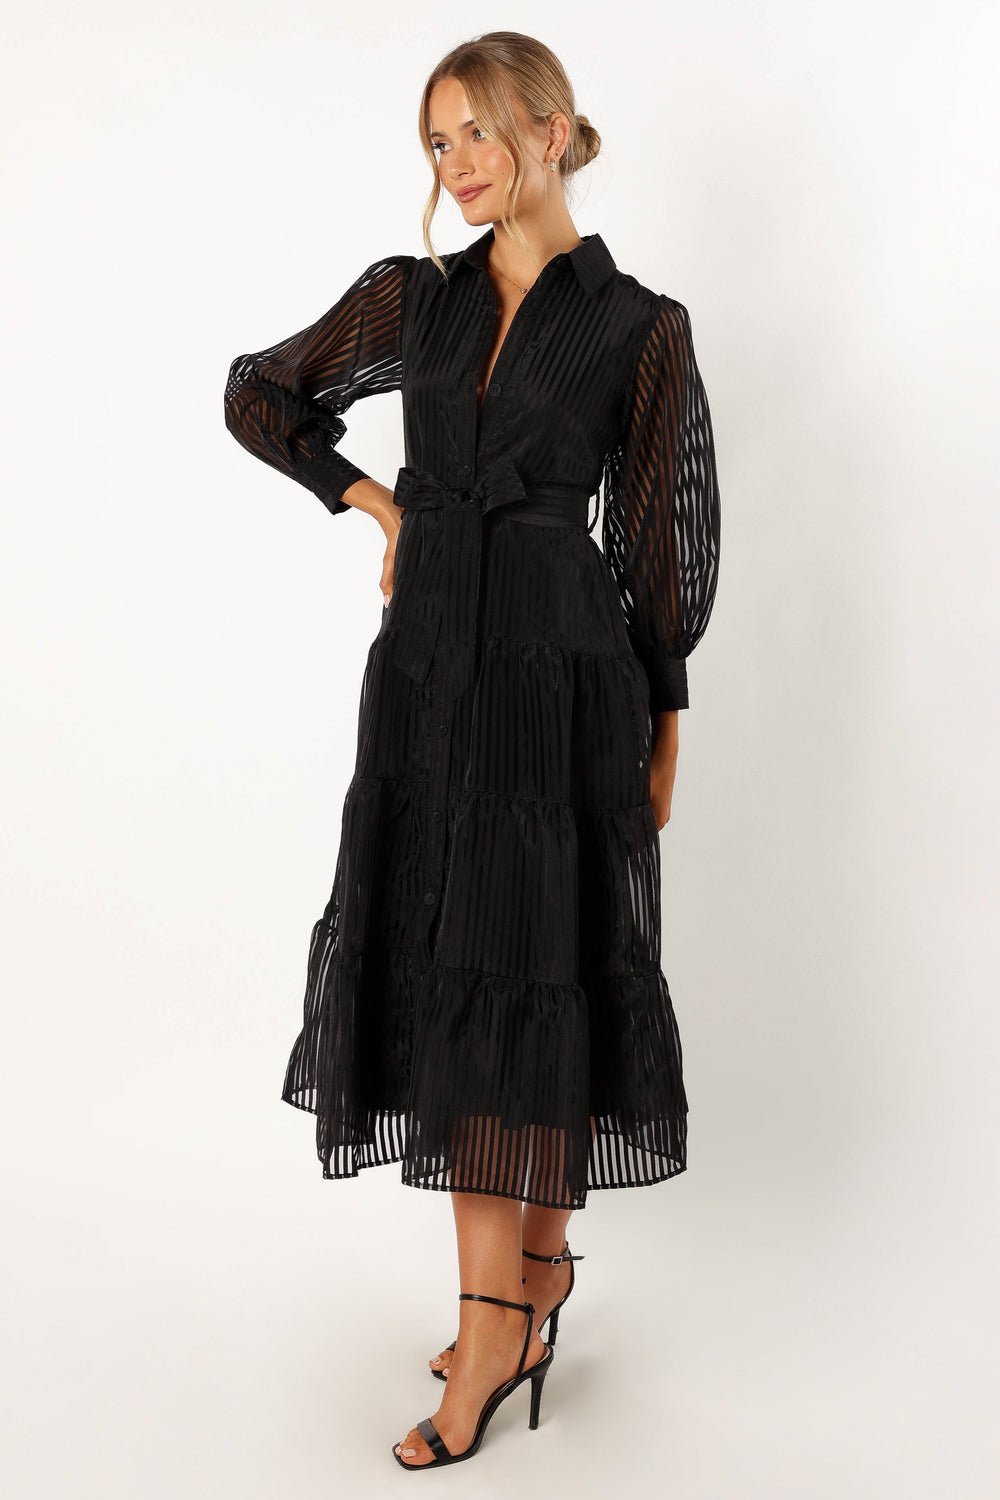 Neve Long Sleeve Maxi Dress - Black - Petal & Pup USA